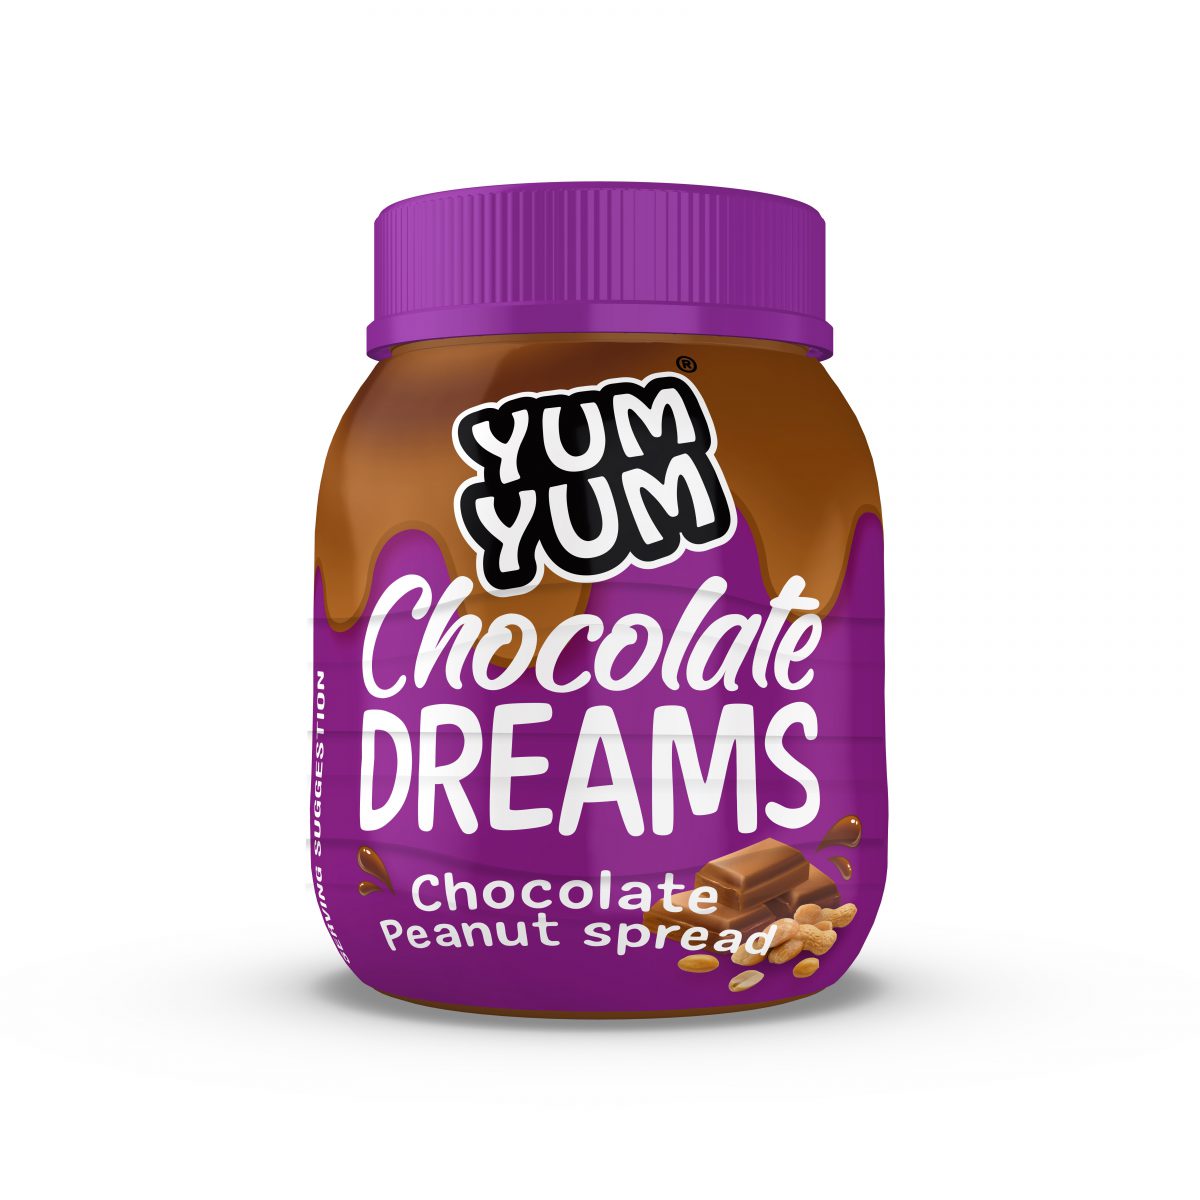 Yum yum chocolate dreams tub